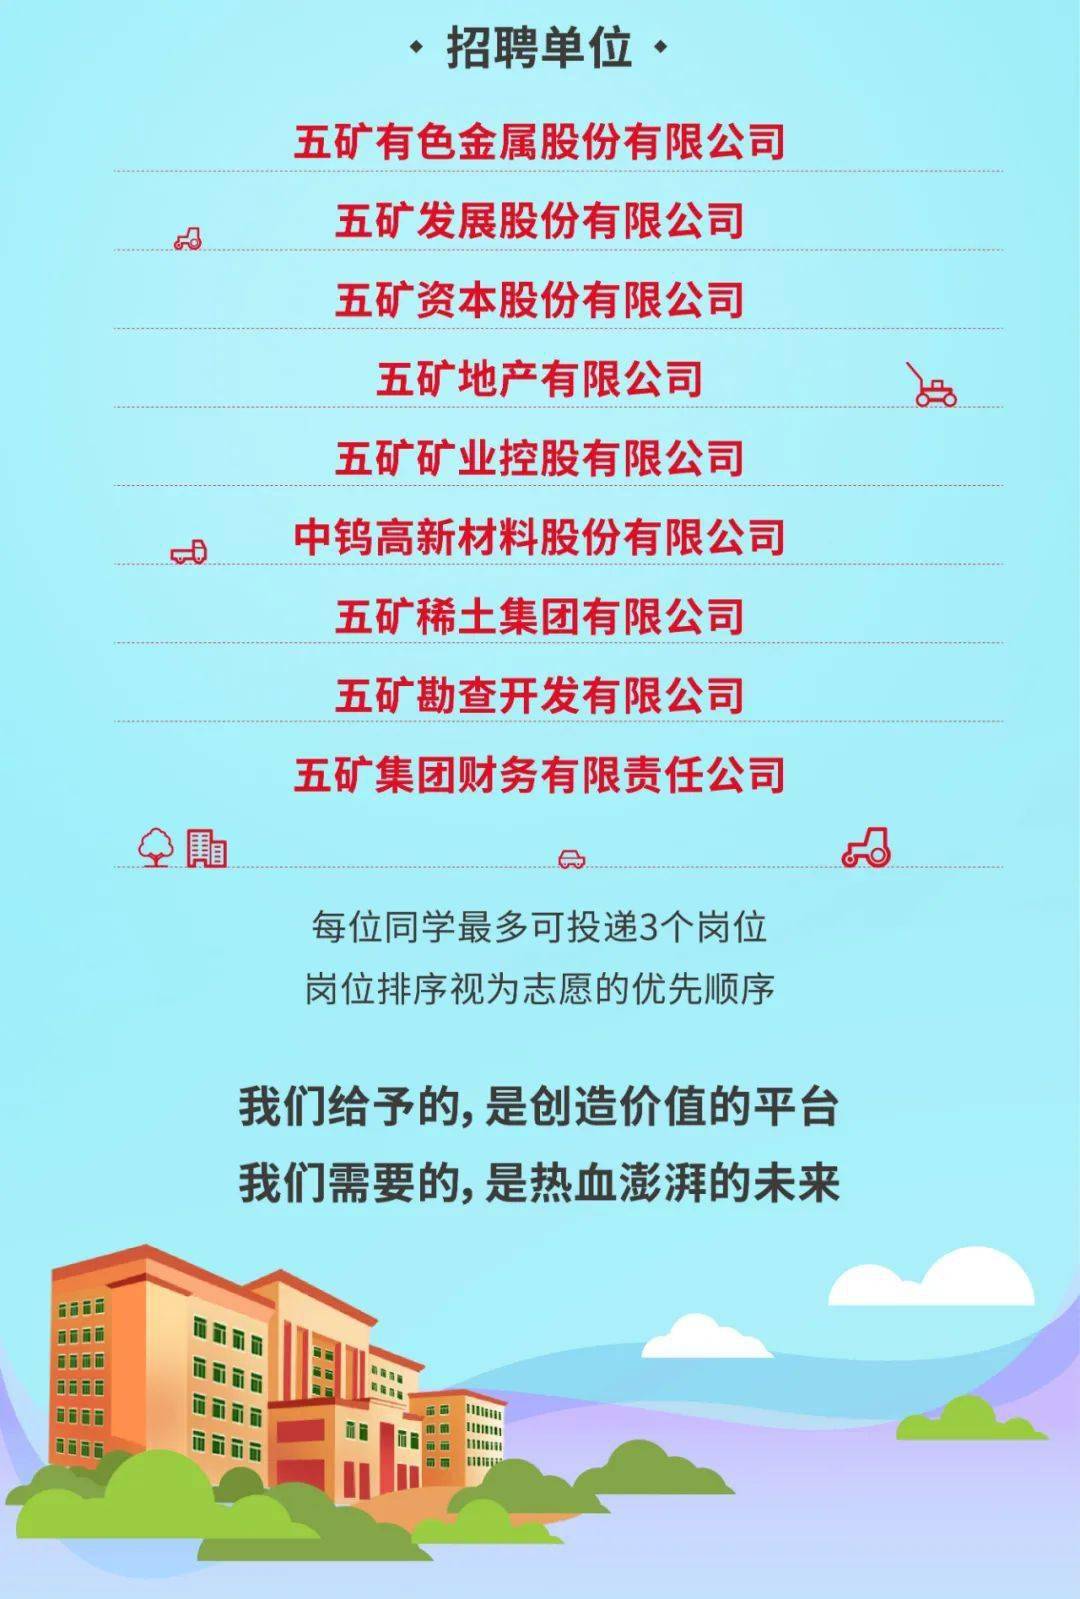 交大招聘_招募令 上海交通大学学生科学技术协会招新(2)